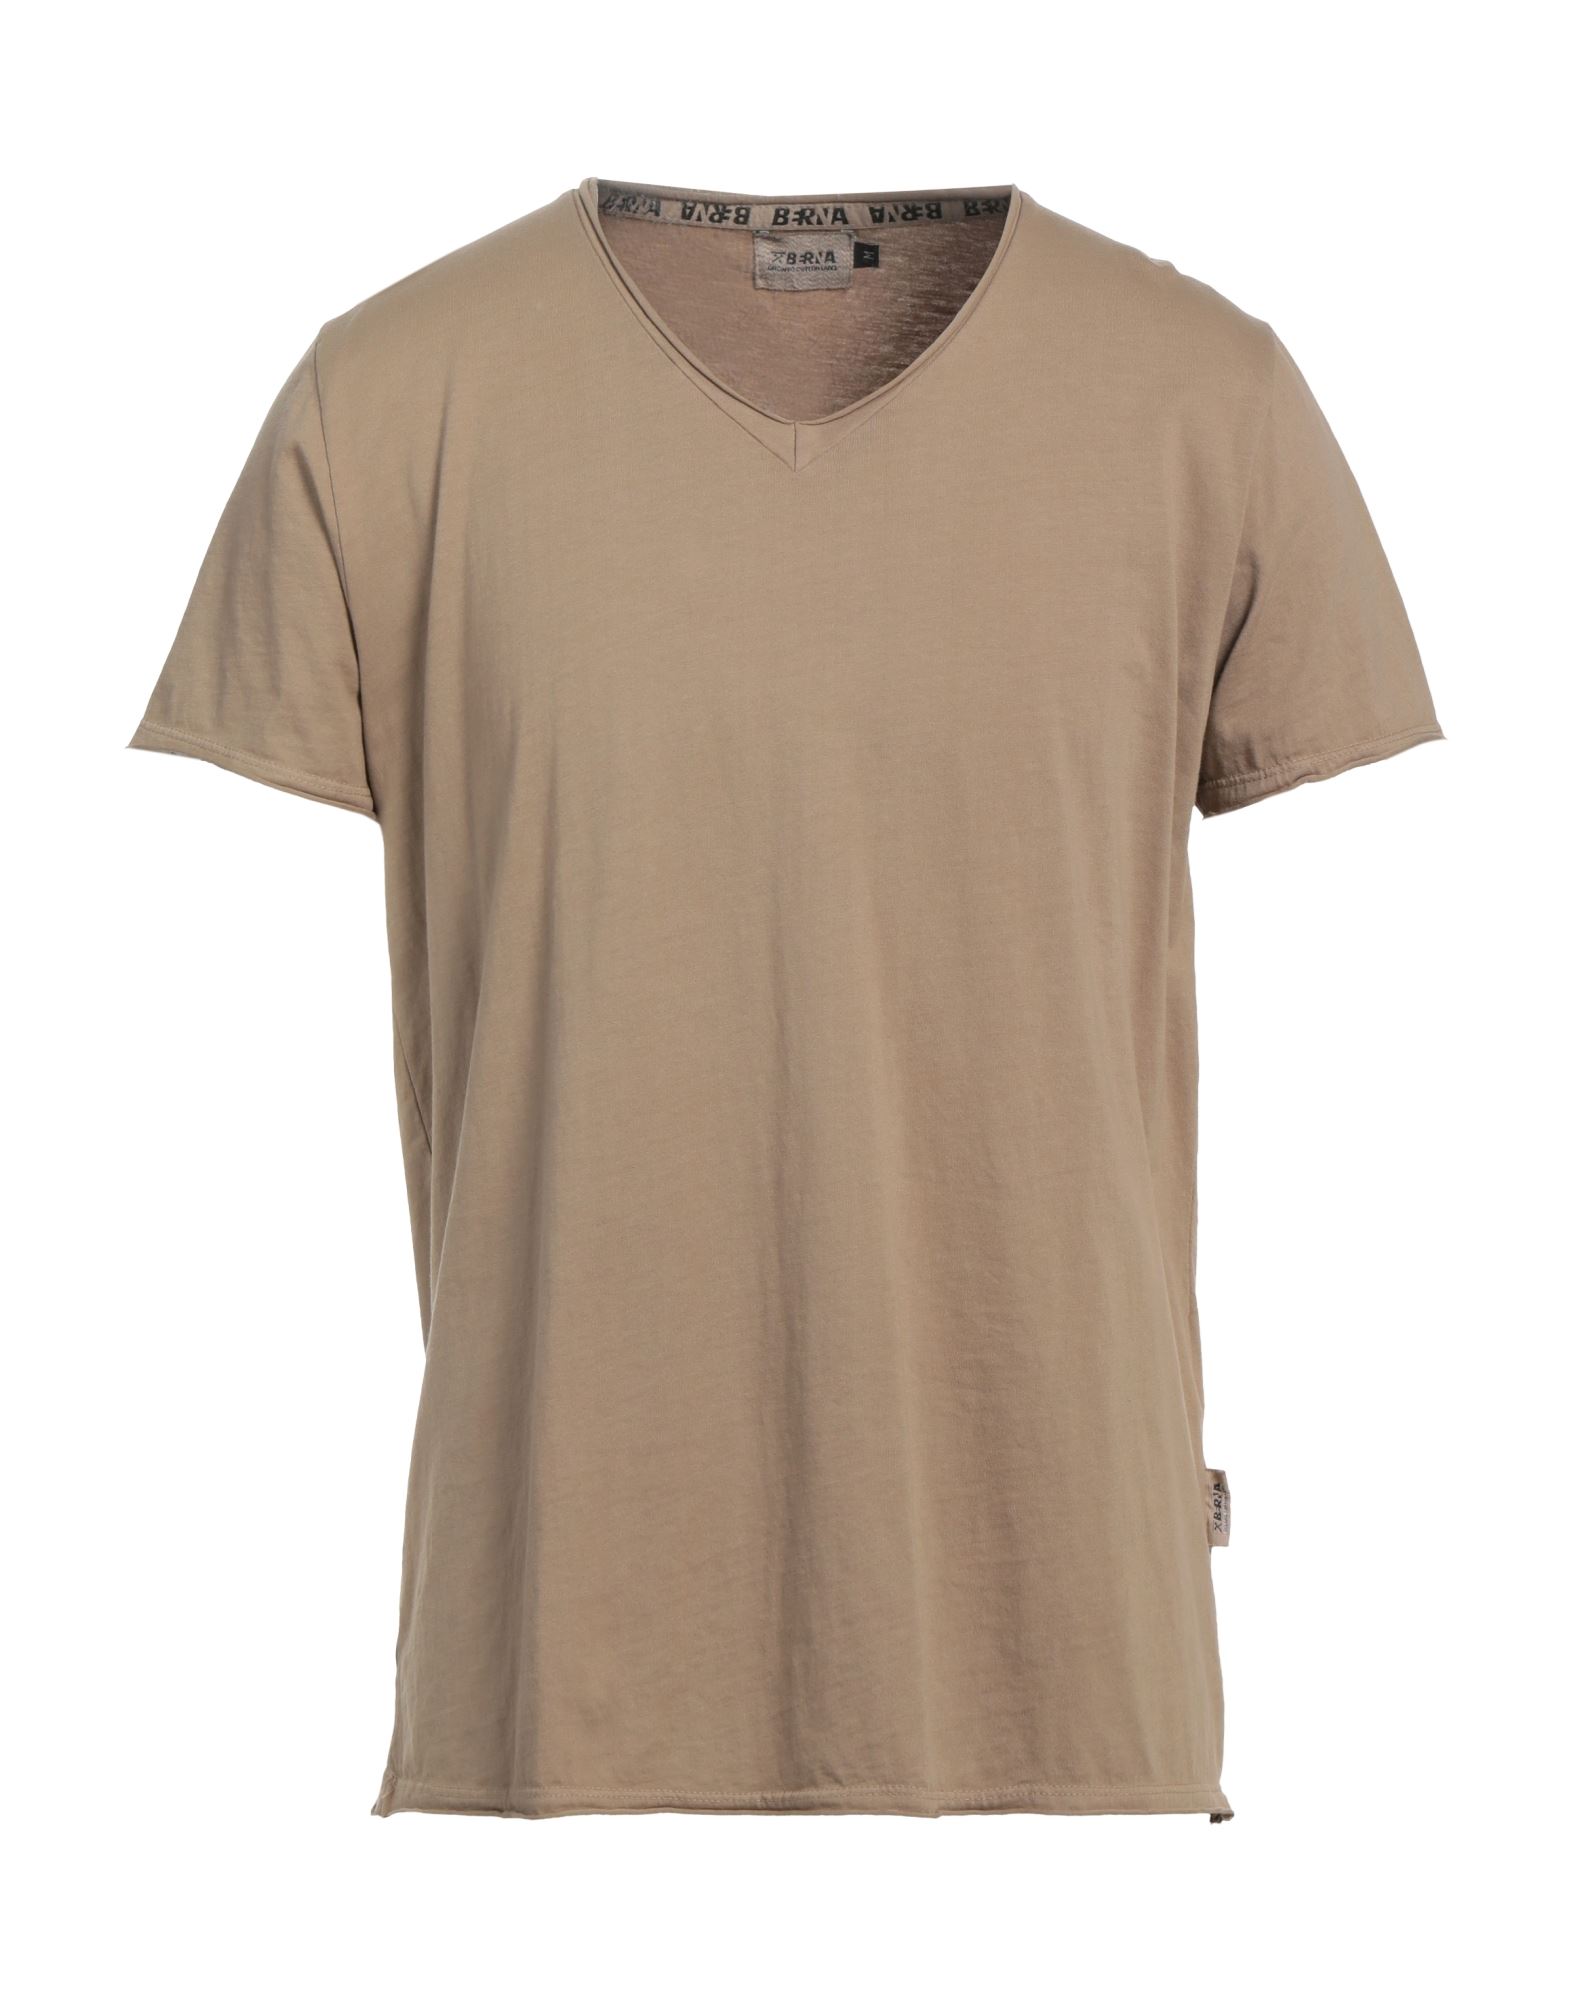 Shop Berna Man T-shirt Khaki Size M Cotton